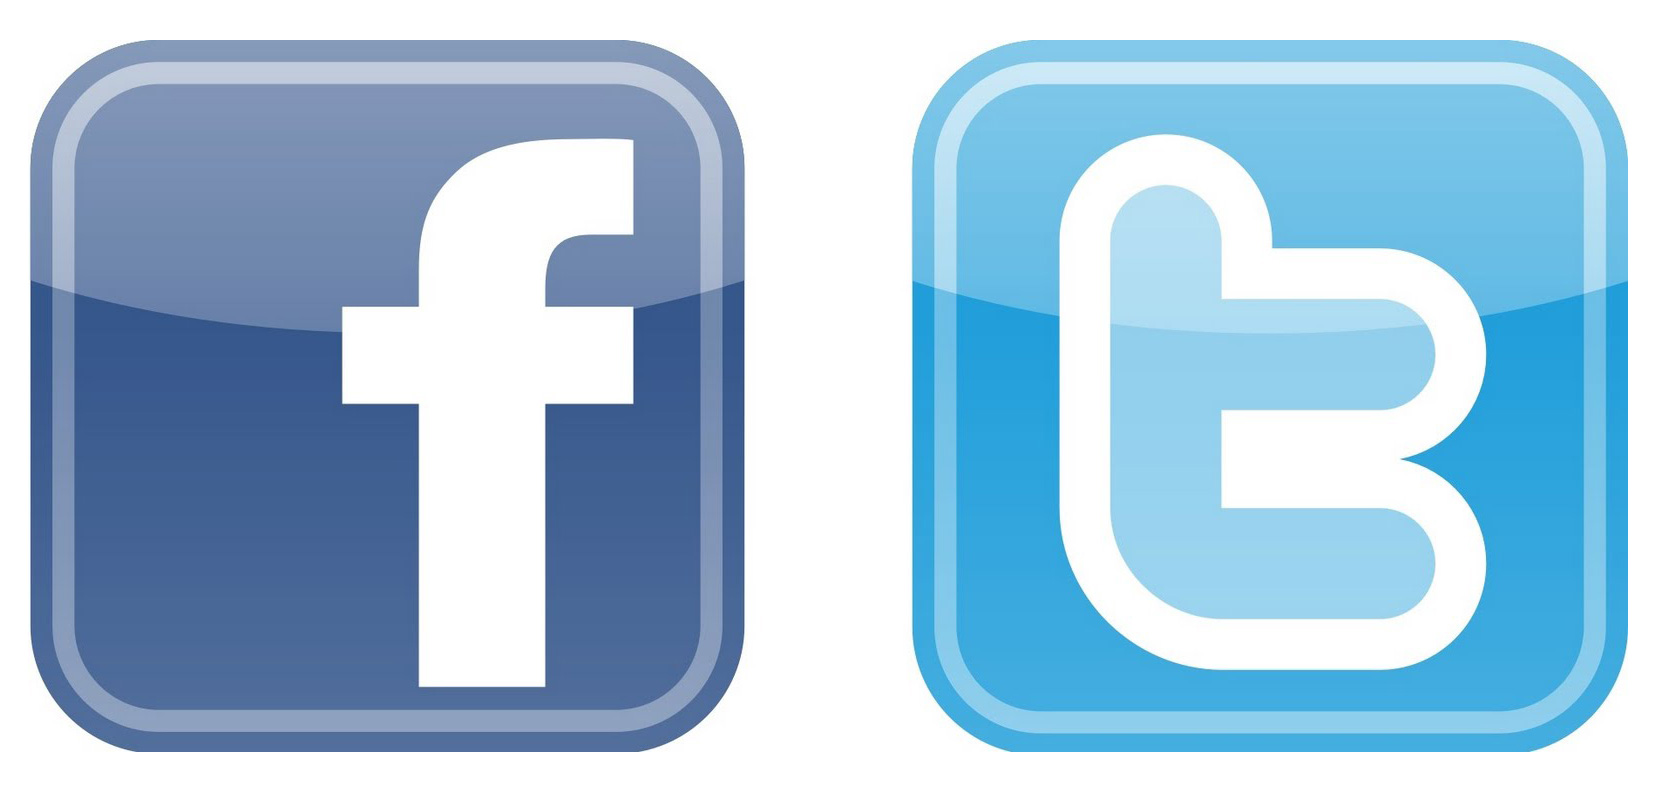 Facebook Twitter Logos Vector - ClipArt Best